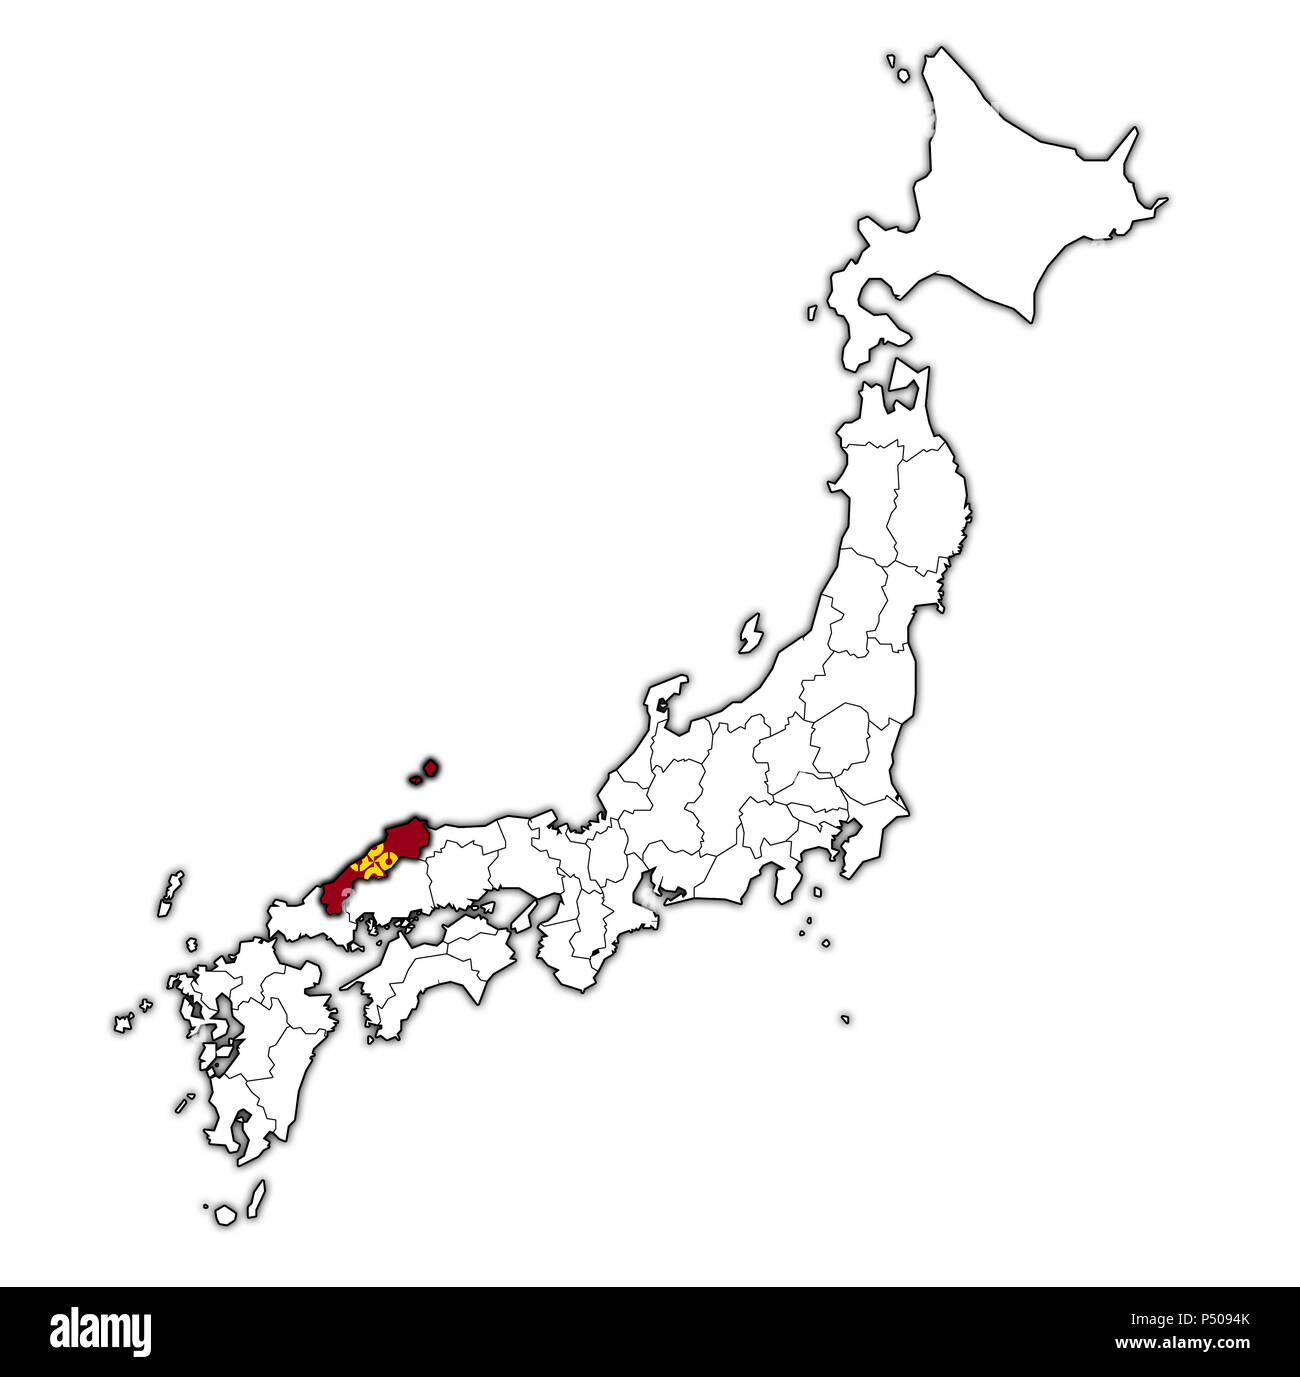 Flagge der Präfektur Shimane auf Karte mit administrativen Abteilungen und Grenzen von Japan Stockfoto